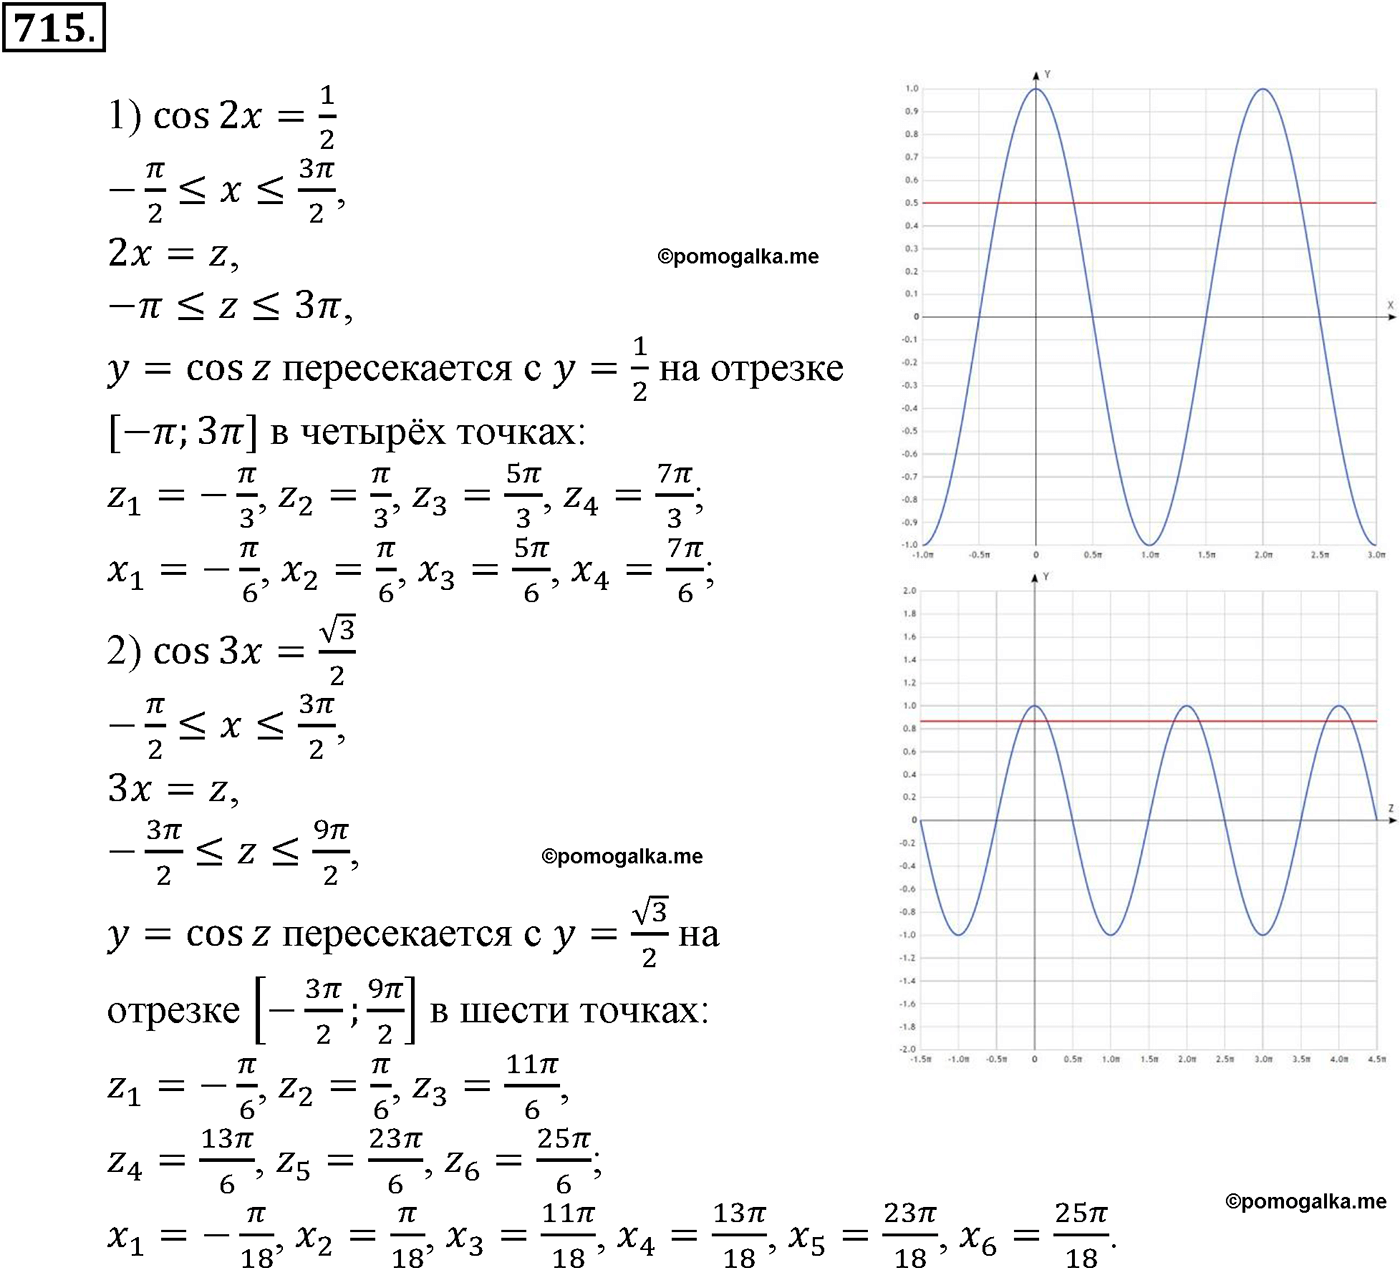 разбор задачи №715 по алгебре за 10-11 класс из учебника Алимова, Колягина